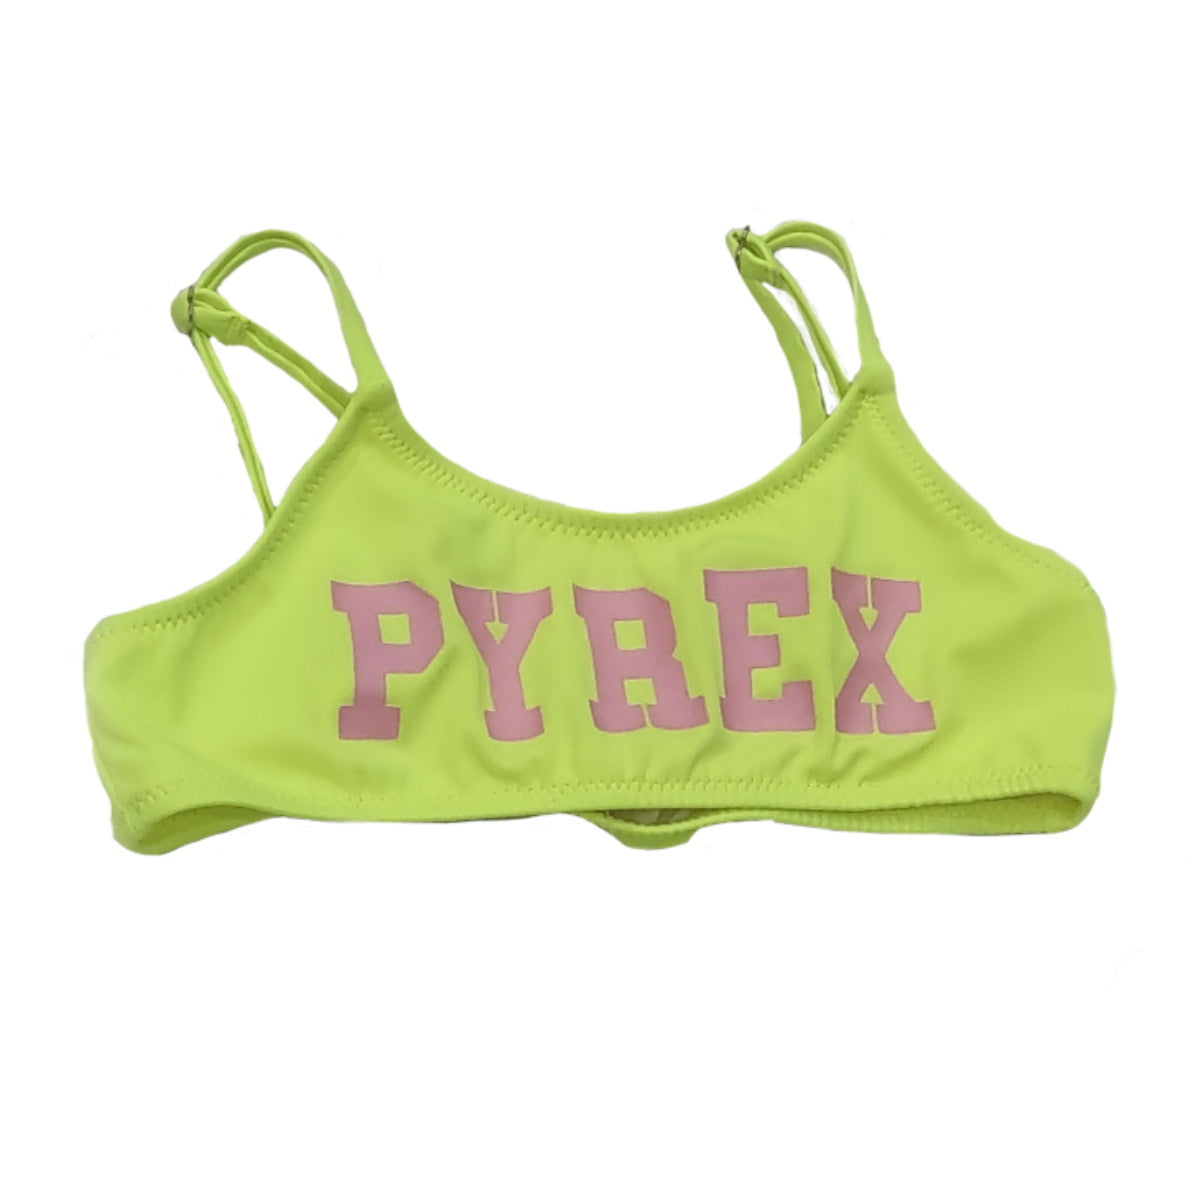 Pyrex bikini bambina giallo fluo